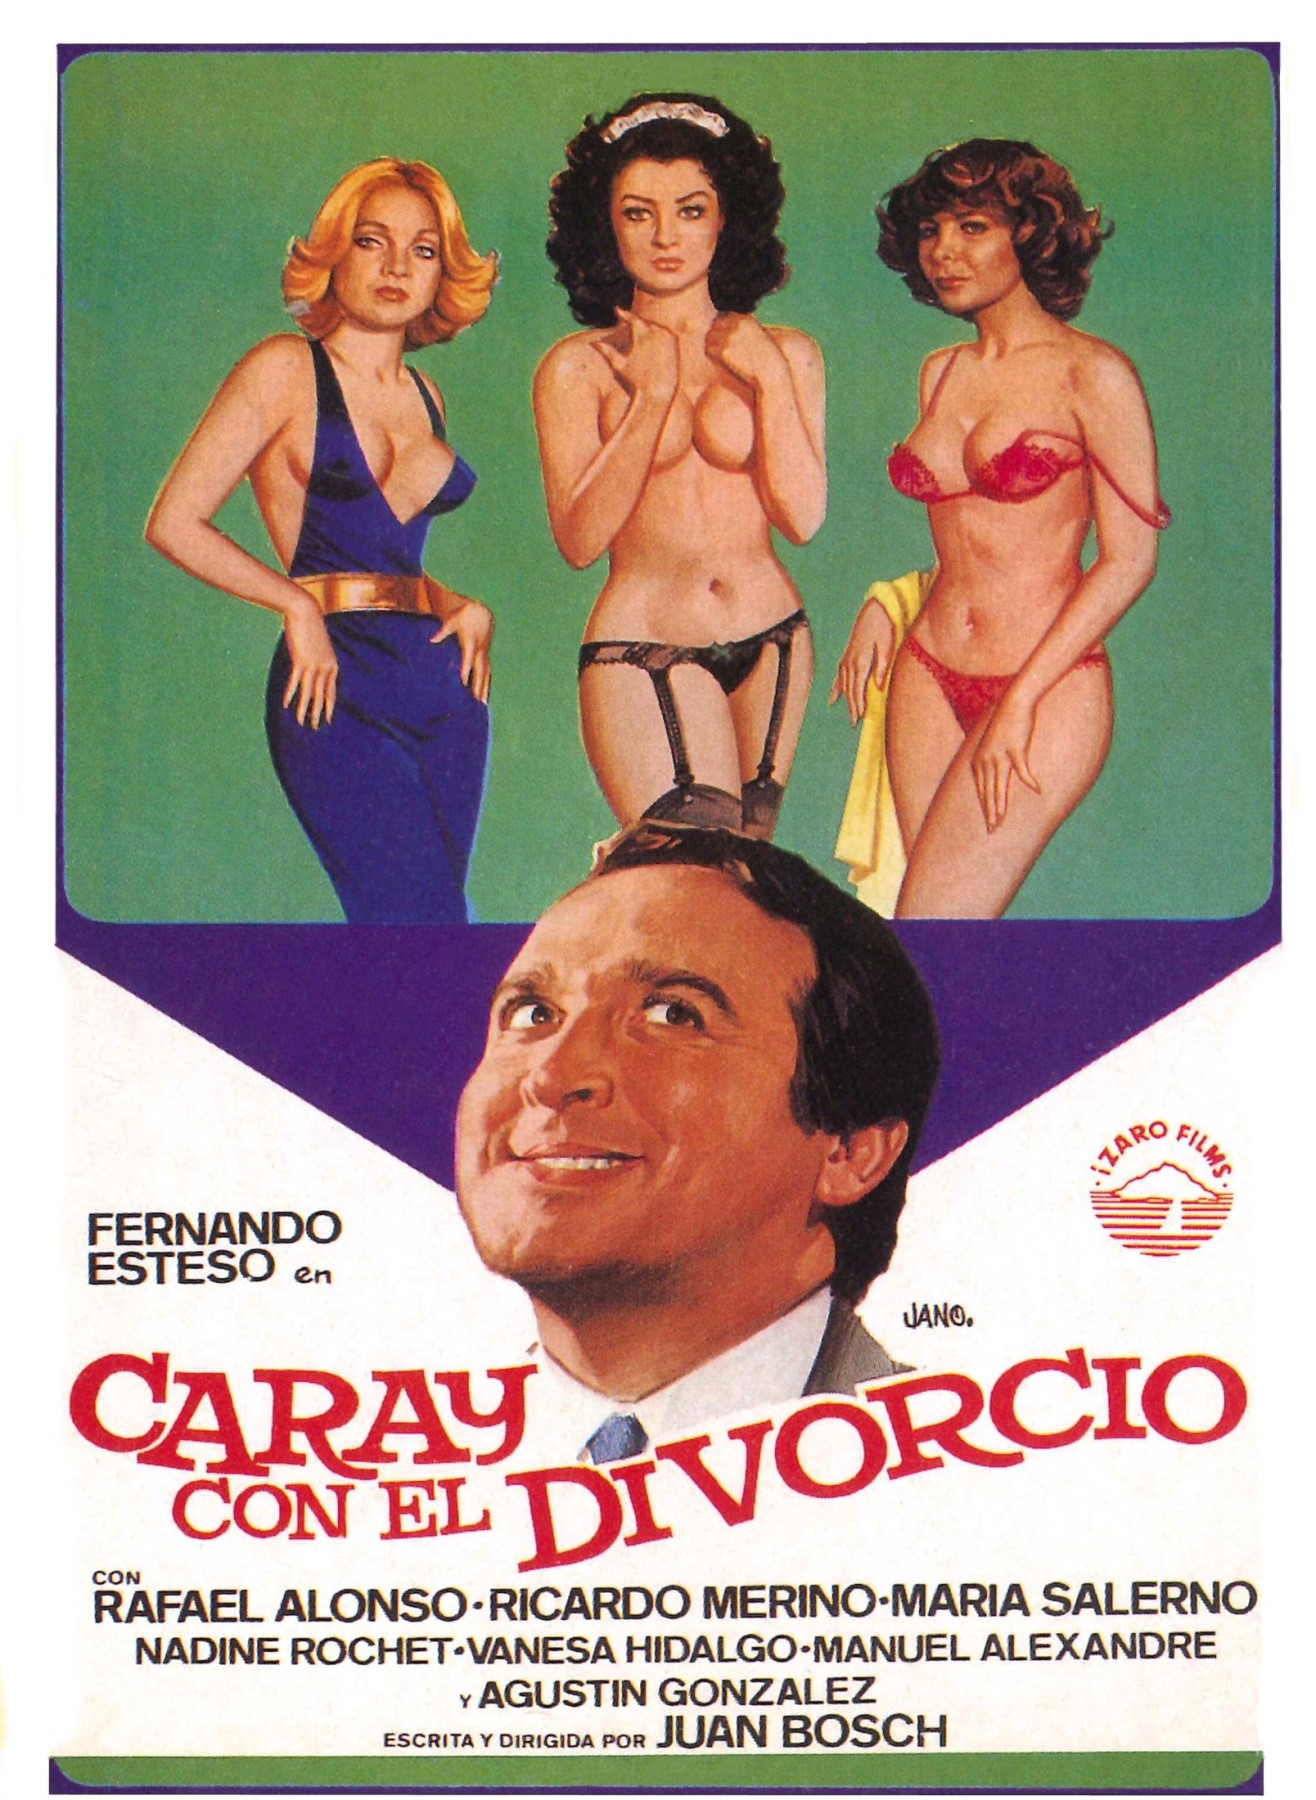 Caray con el divorcio (1982) Screenshot 1